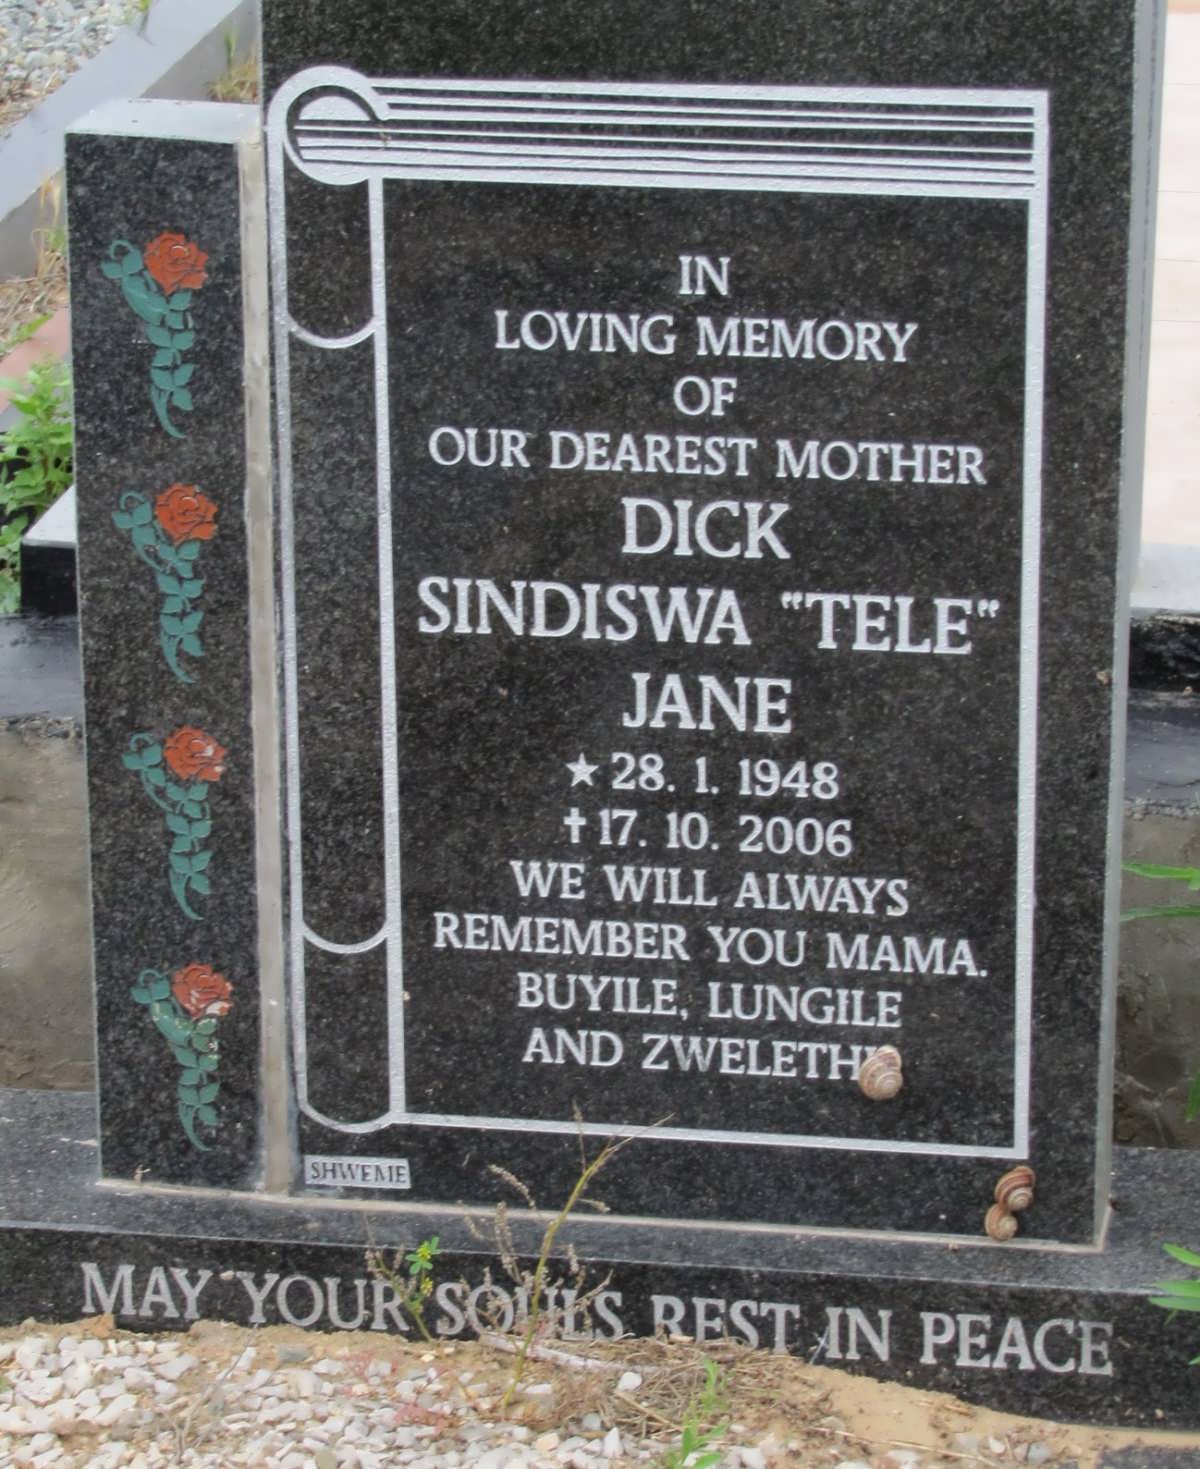 DICK Sindiswa Jane 1948-2006